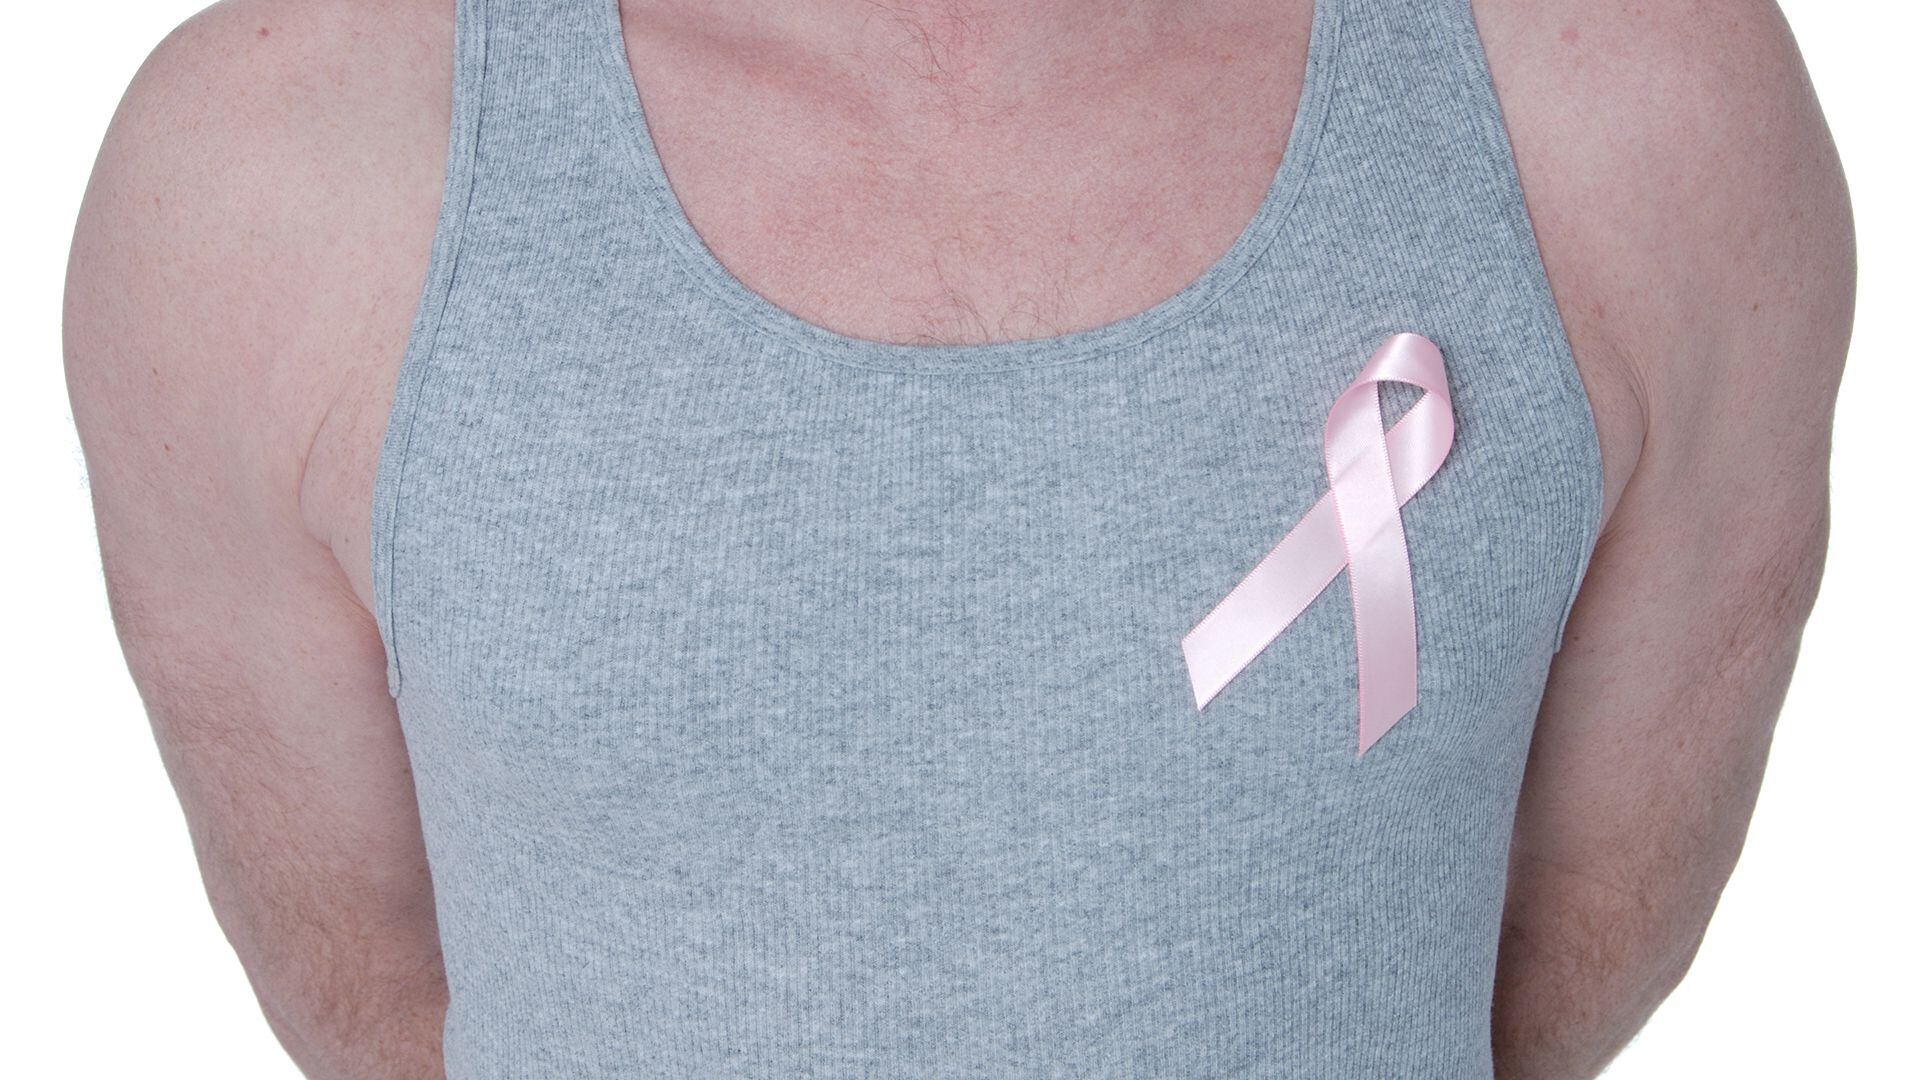 cáncer de mama en hombres